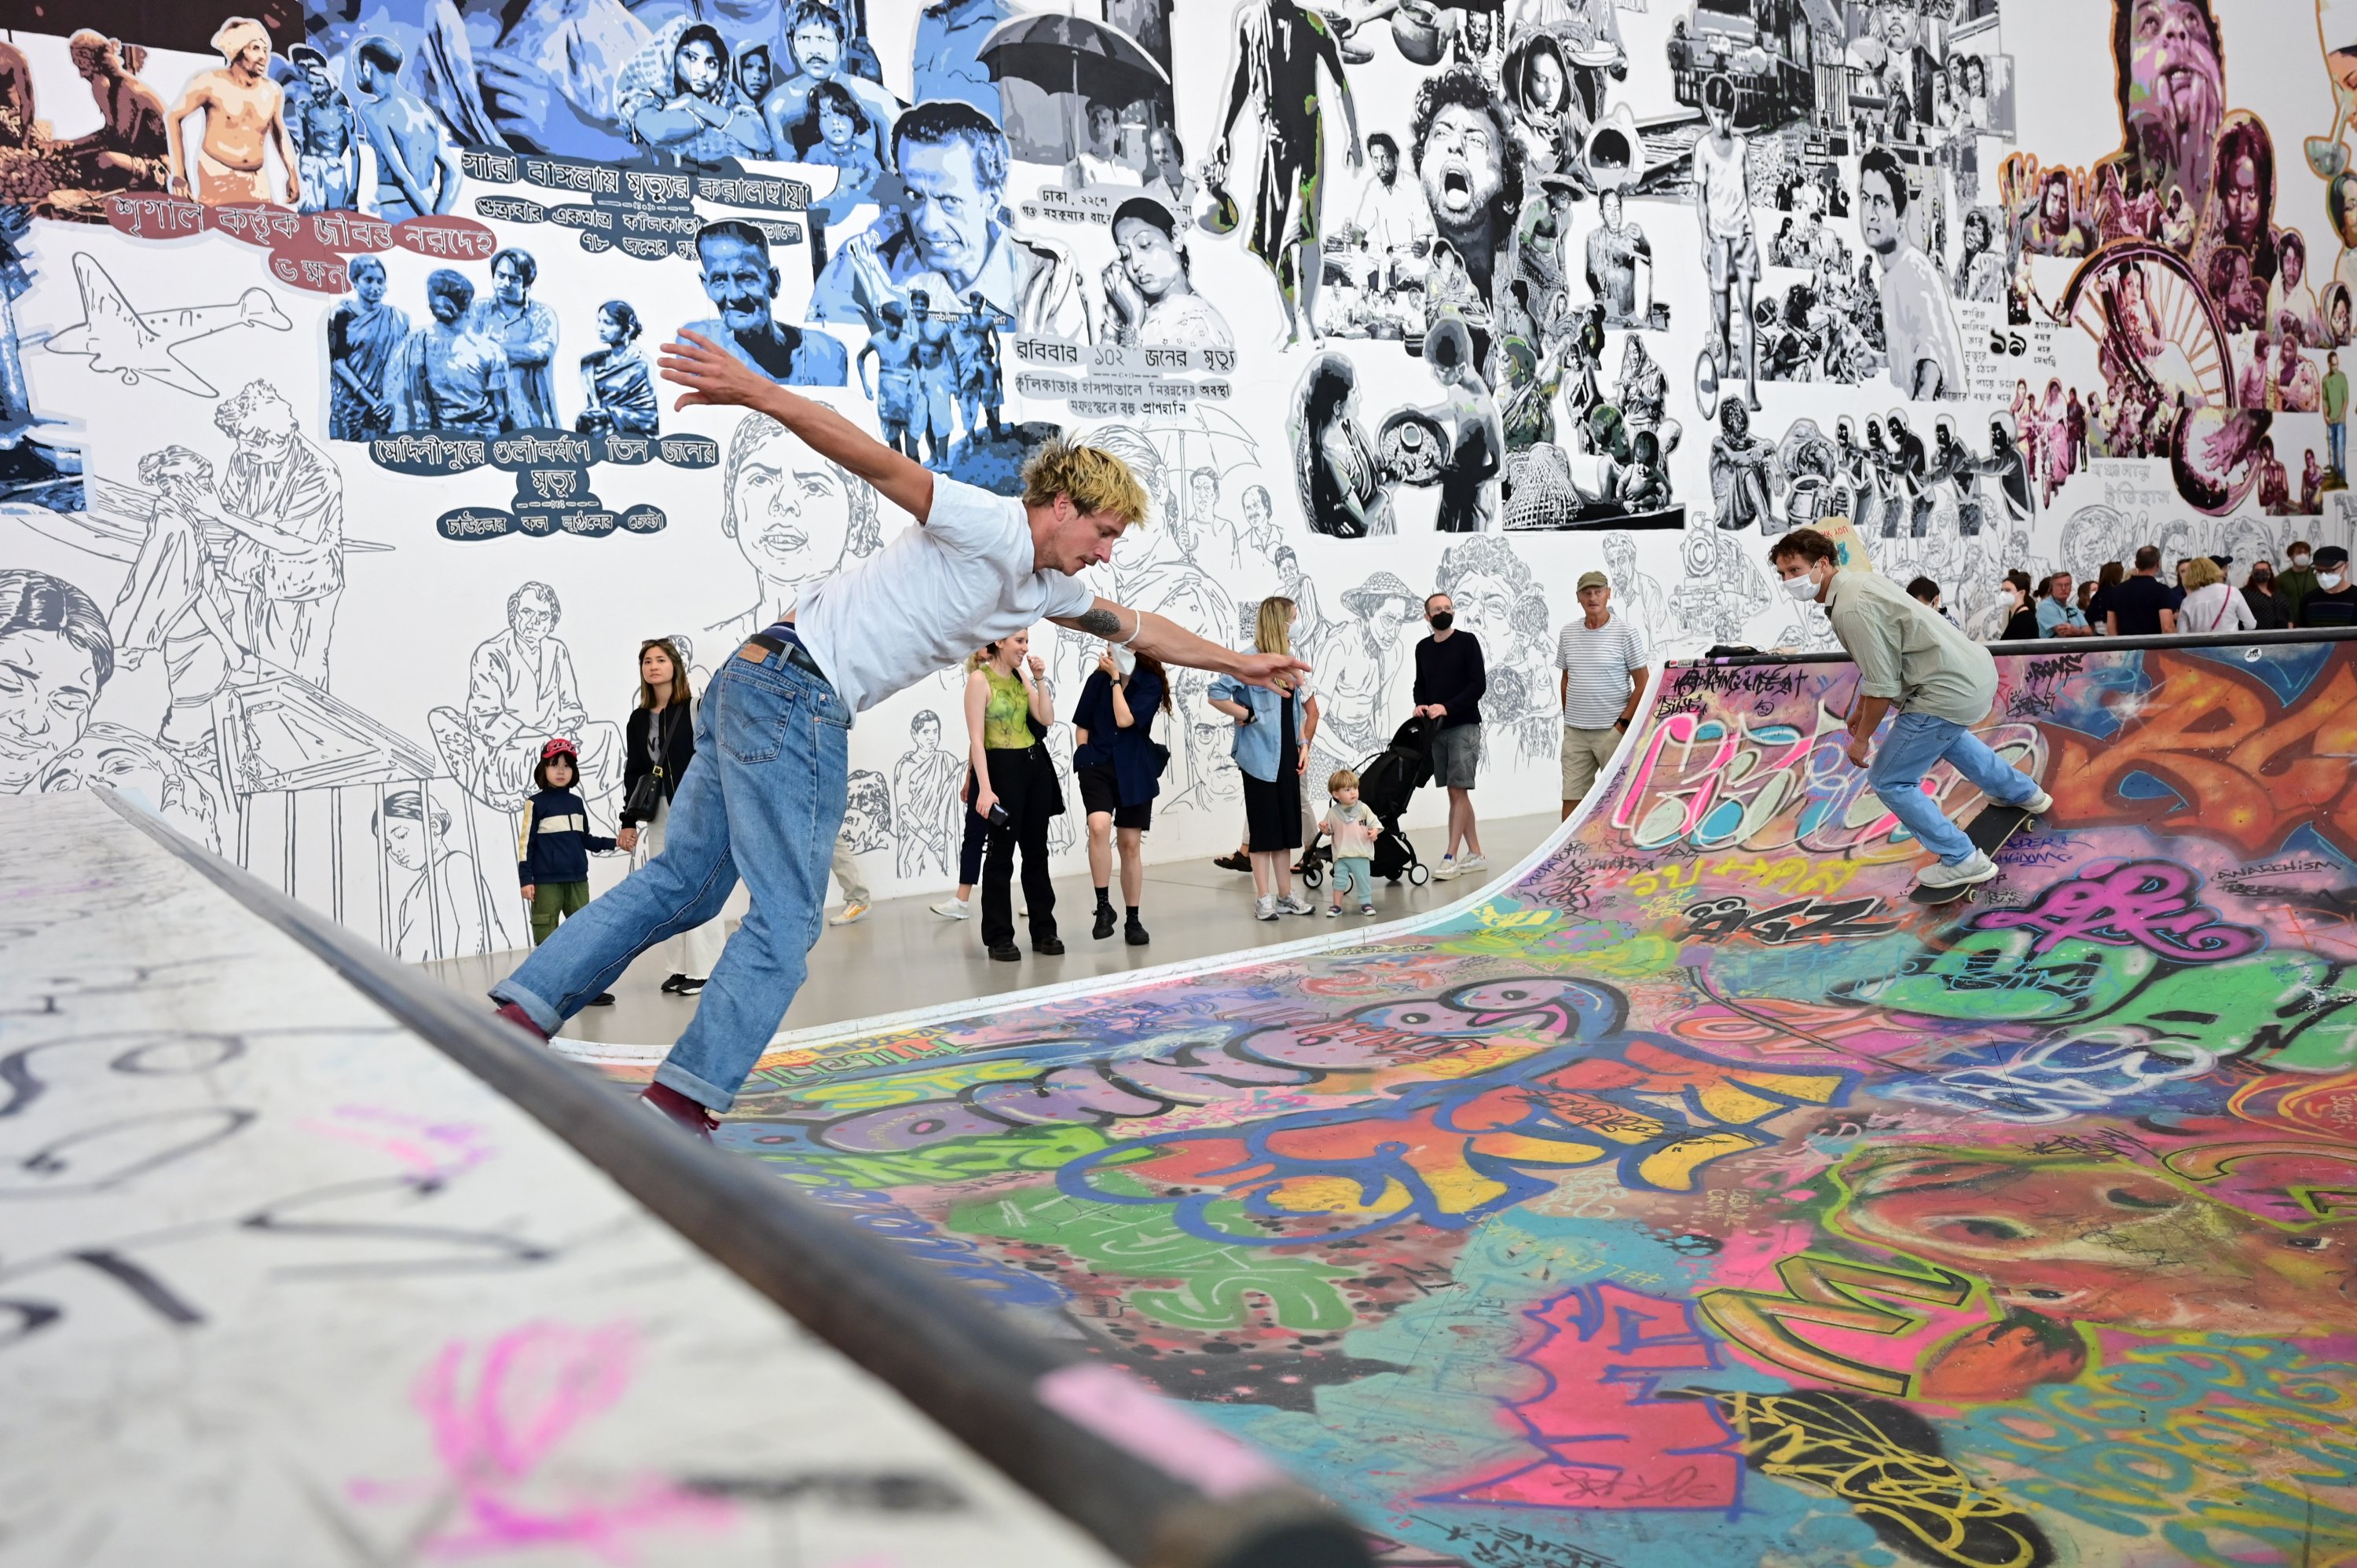 Para pemain skateboard menaiki halfpipe di aula documenta, yang merupakan bagian dari karya prakarsa Seni dan Budaya Kolaborasi Baan Noorg, Kessel, Jerman, 6 Agustus 2022. (Foto dpa)